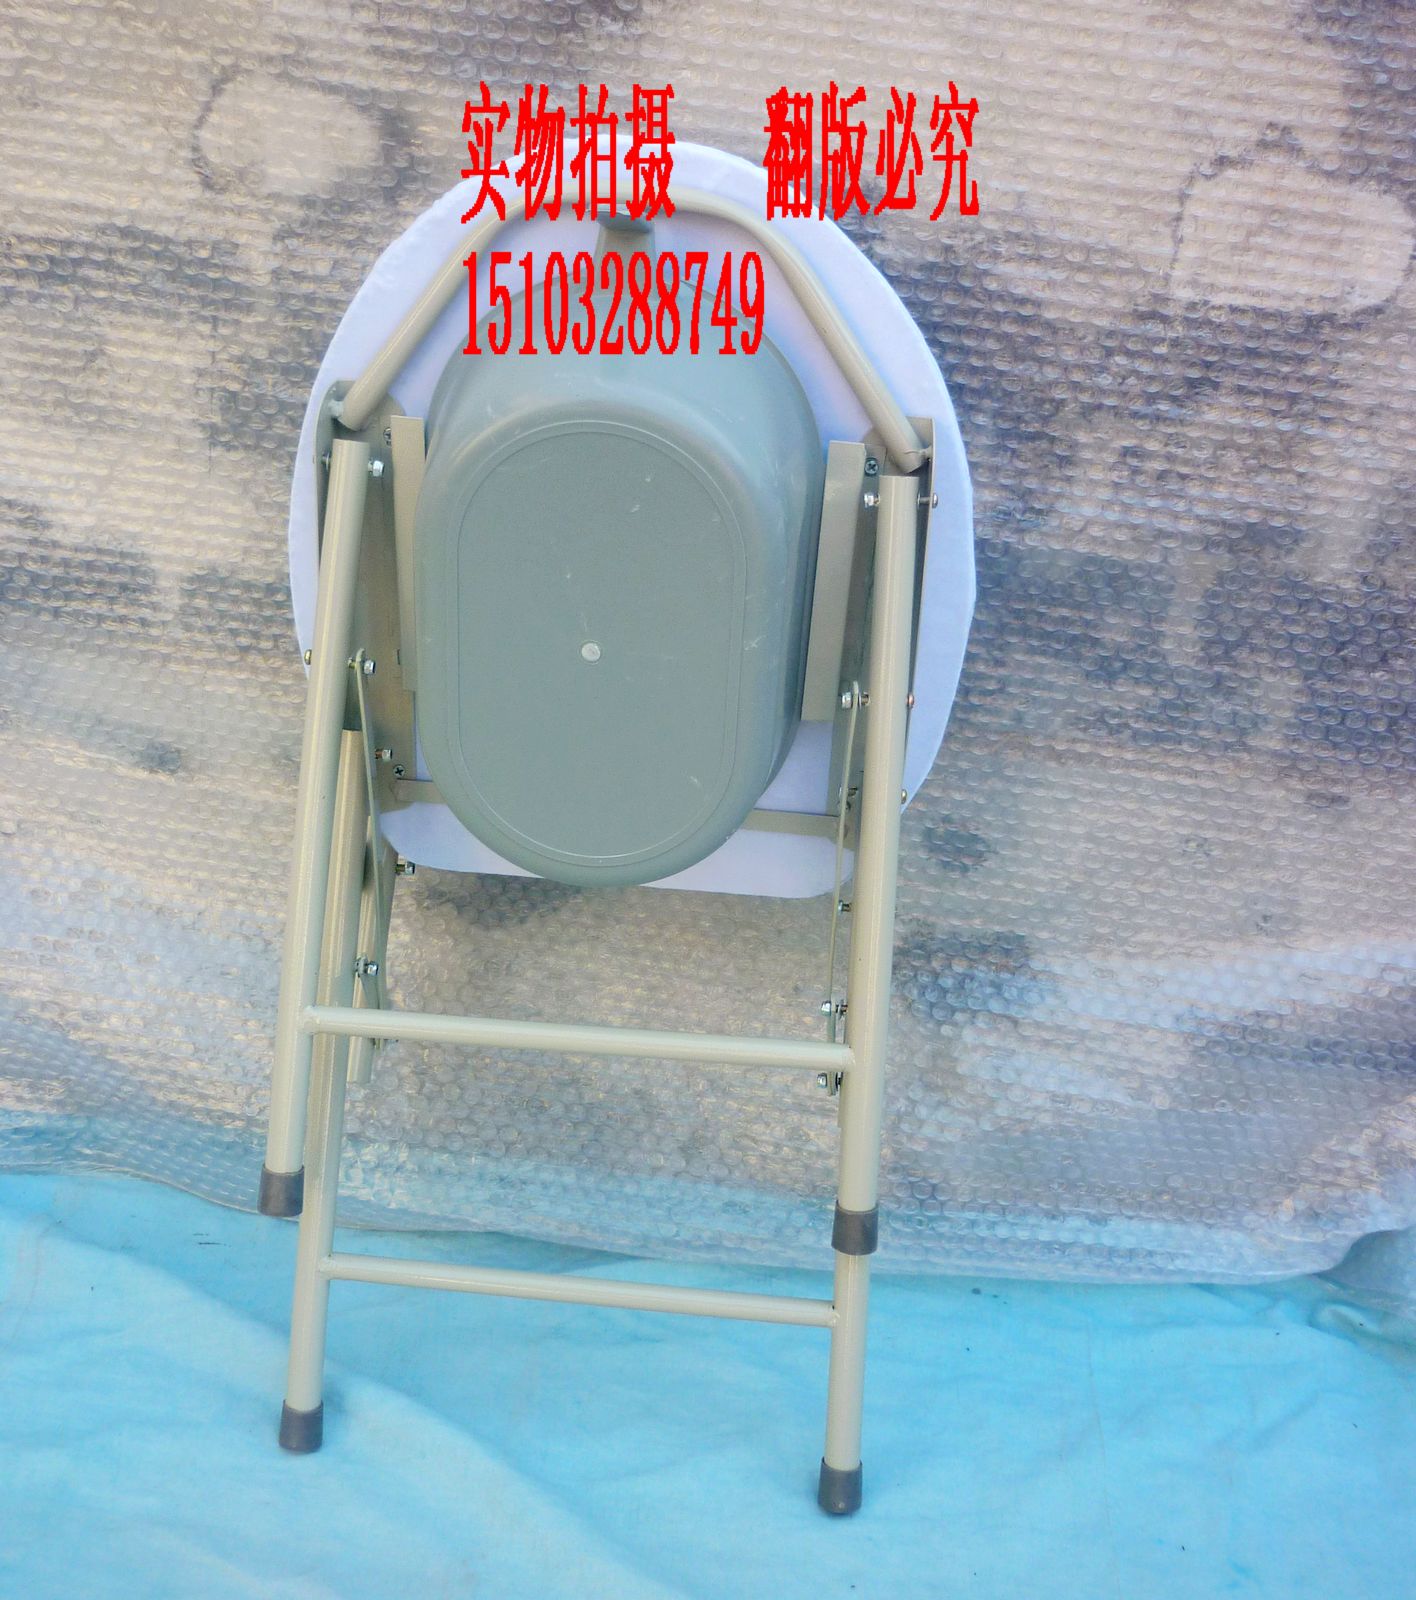 优惠厕椅 老人坐便椅孕妇折叠坐便器移动马桶椅座便椅